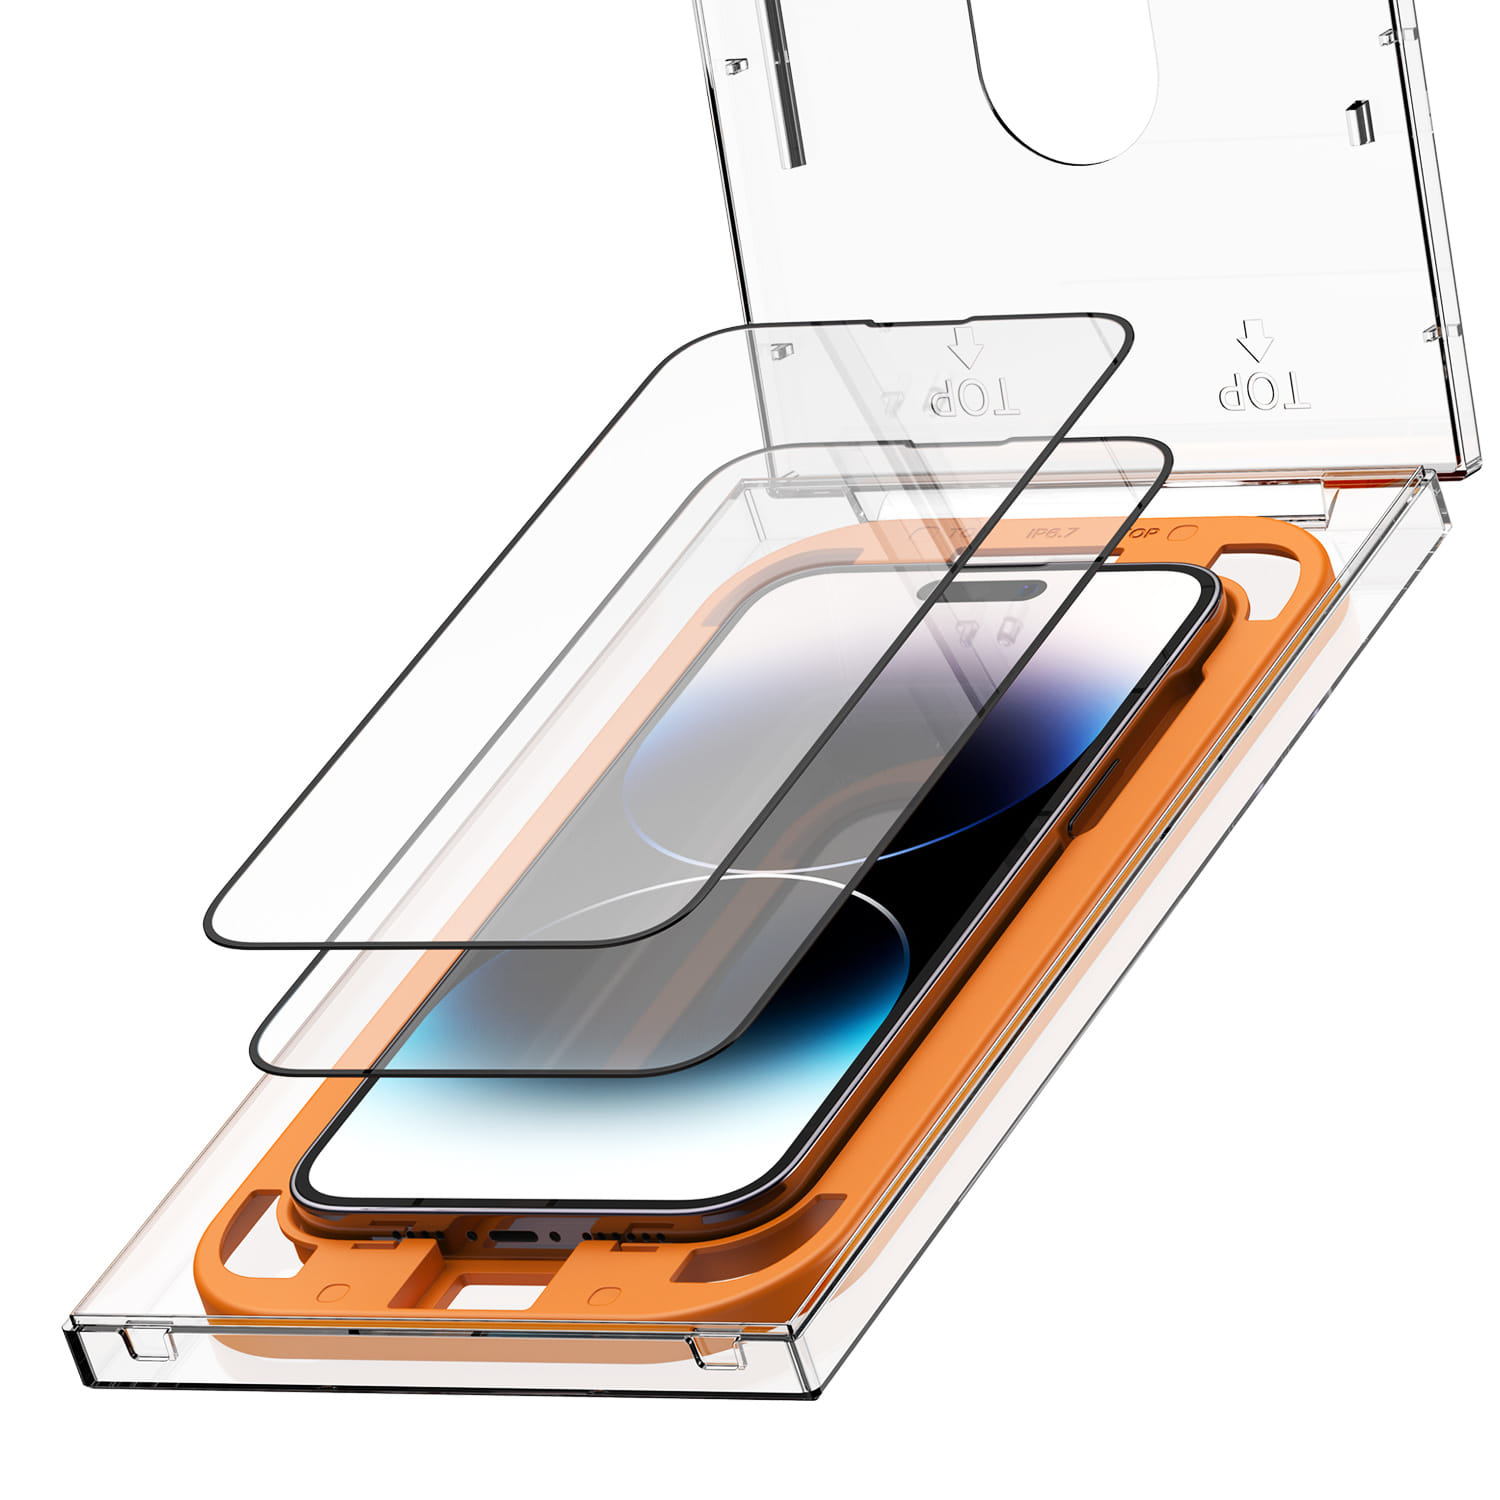 아이폰14 시리즈 퍼펙트 가이드 풀커버 강화유리 방탄 액정보호필름 2매입 (부착키트 포함)